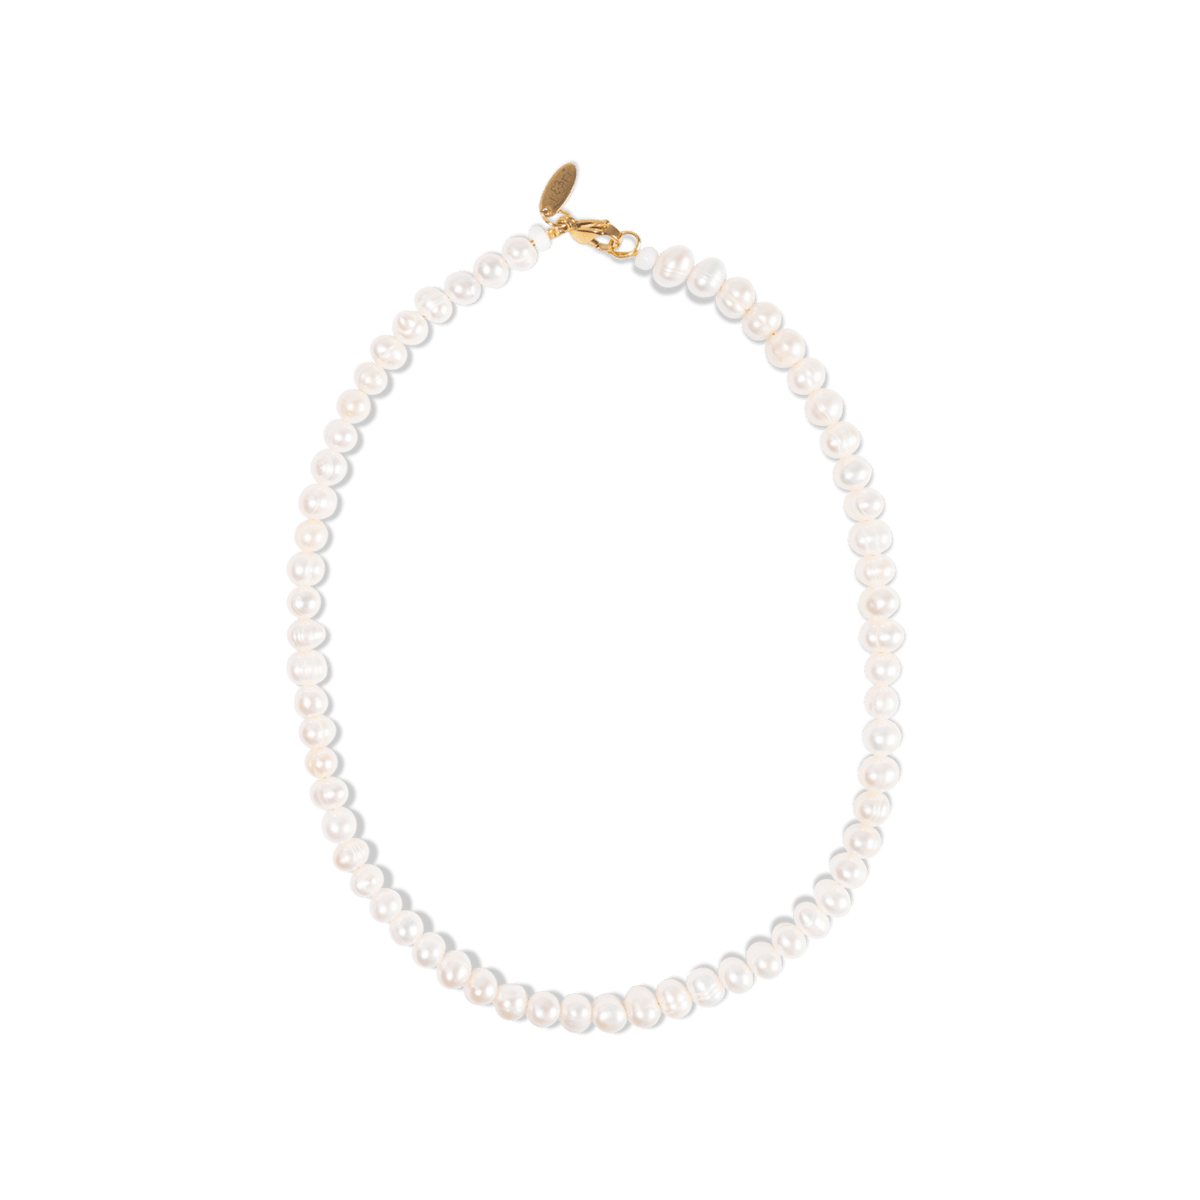 Shunlong 750+ Beads Letter Beads Kit For Bracelet, Necklace